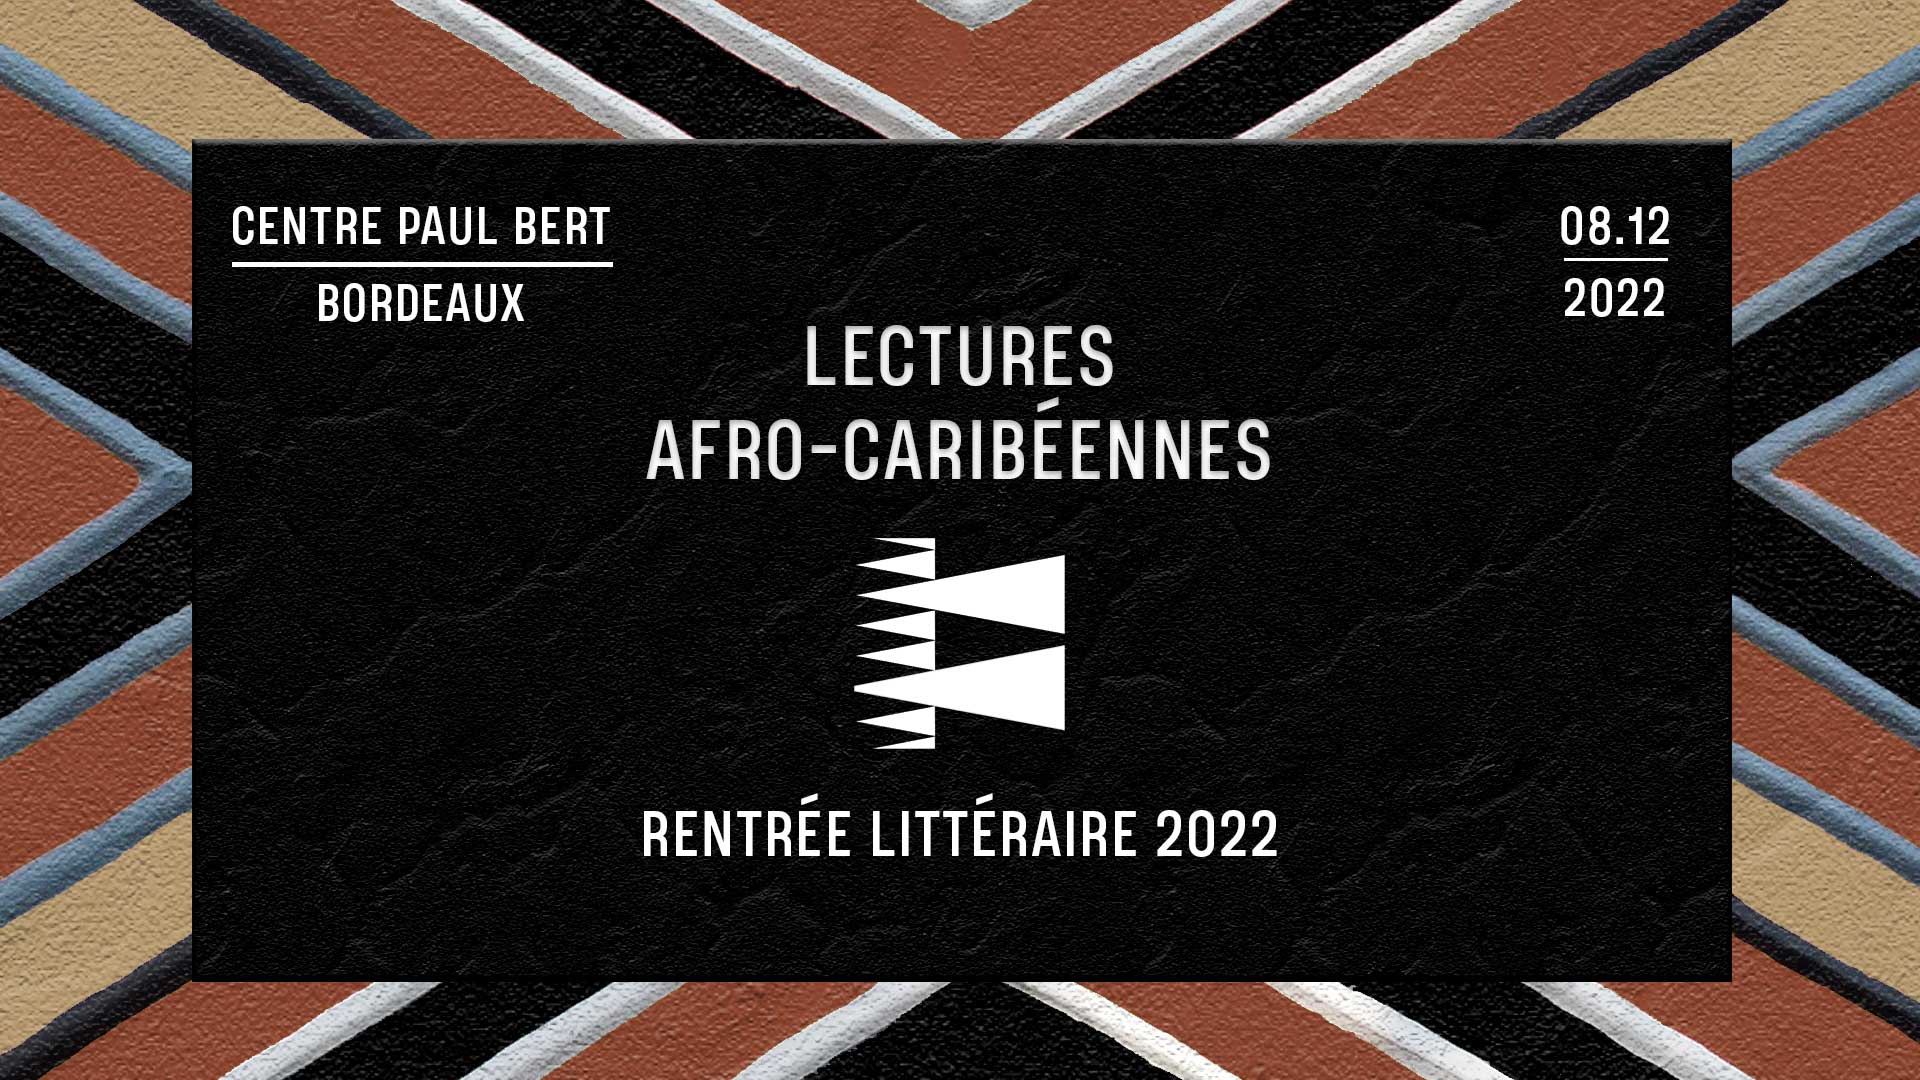 Lectures afro-caribéennes